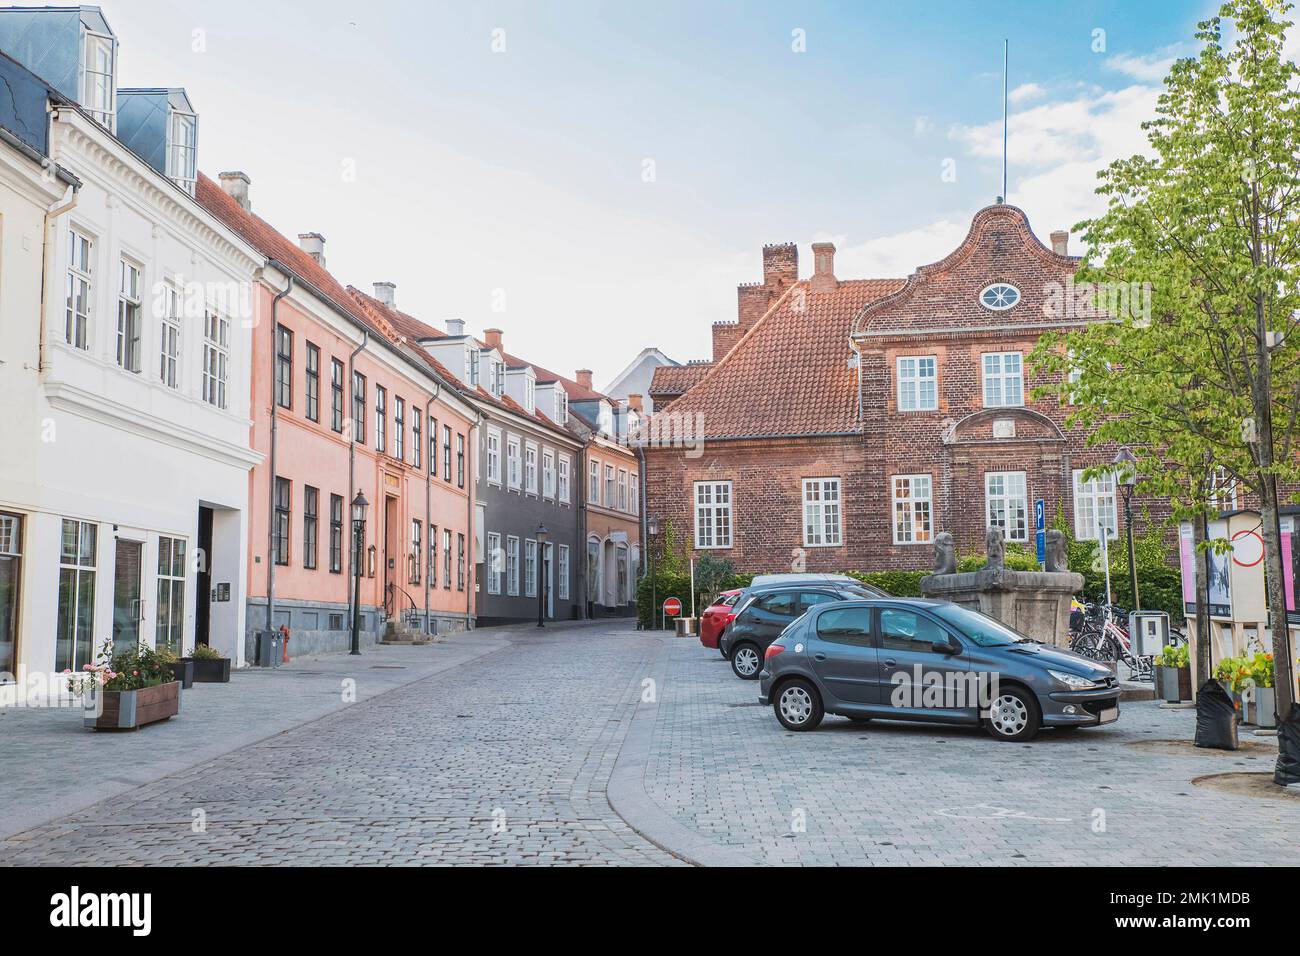 Wunderschöne Straße mit alten Häusern mit Ziegeldach in Viborg Dänemark Stockfoto